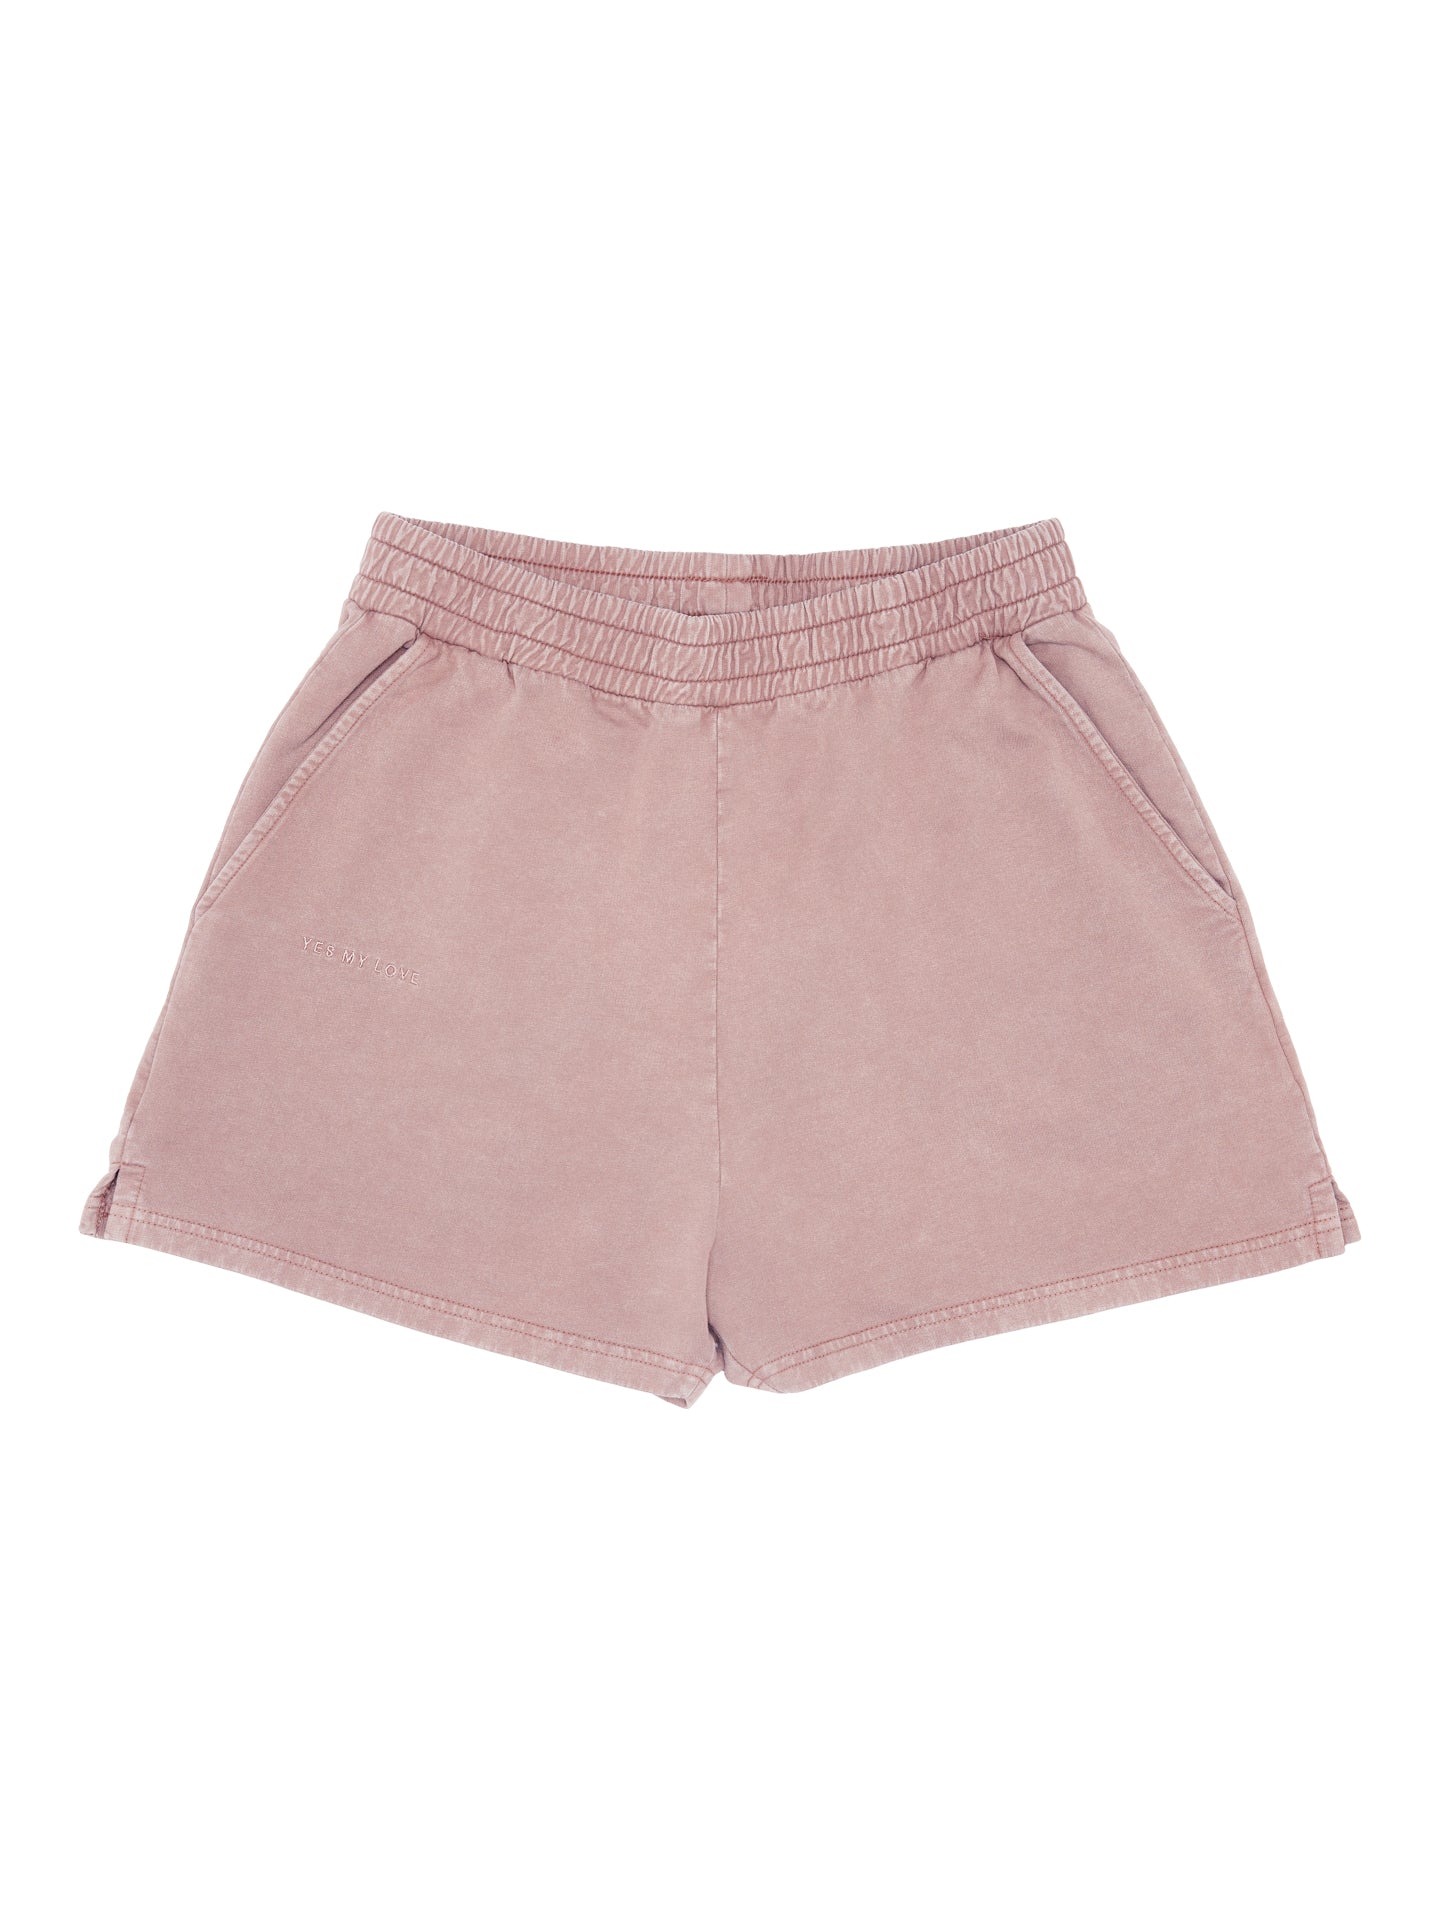 Shorts - vintage mauve